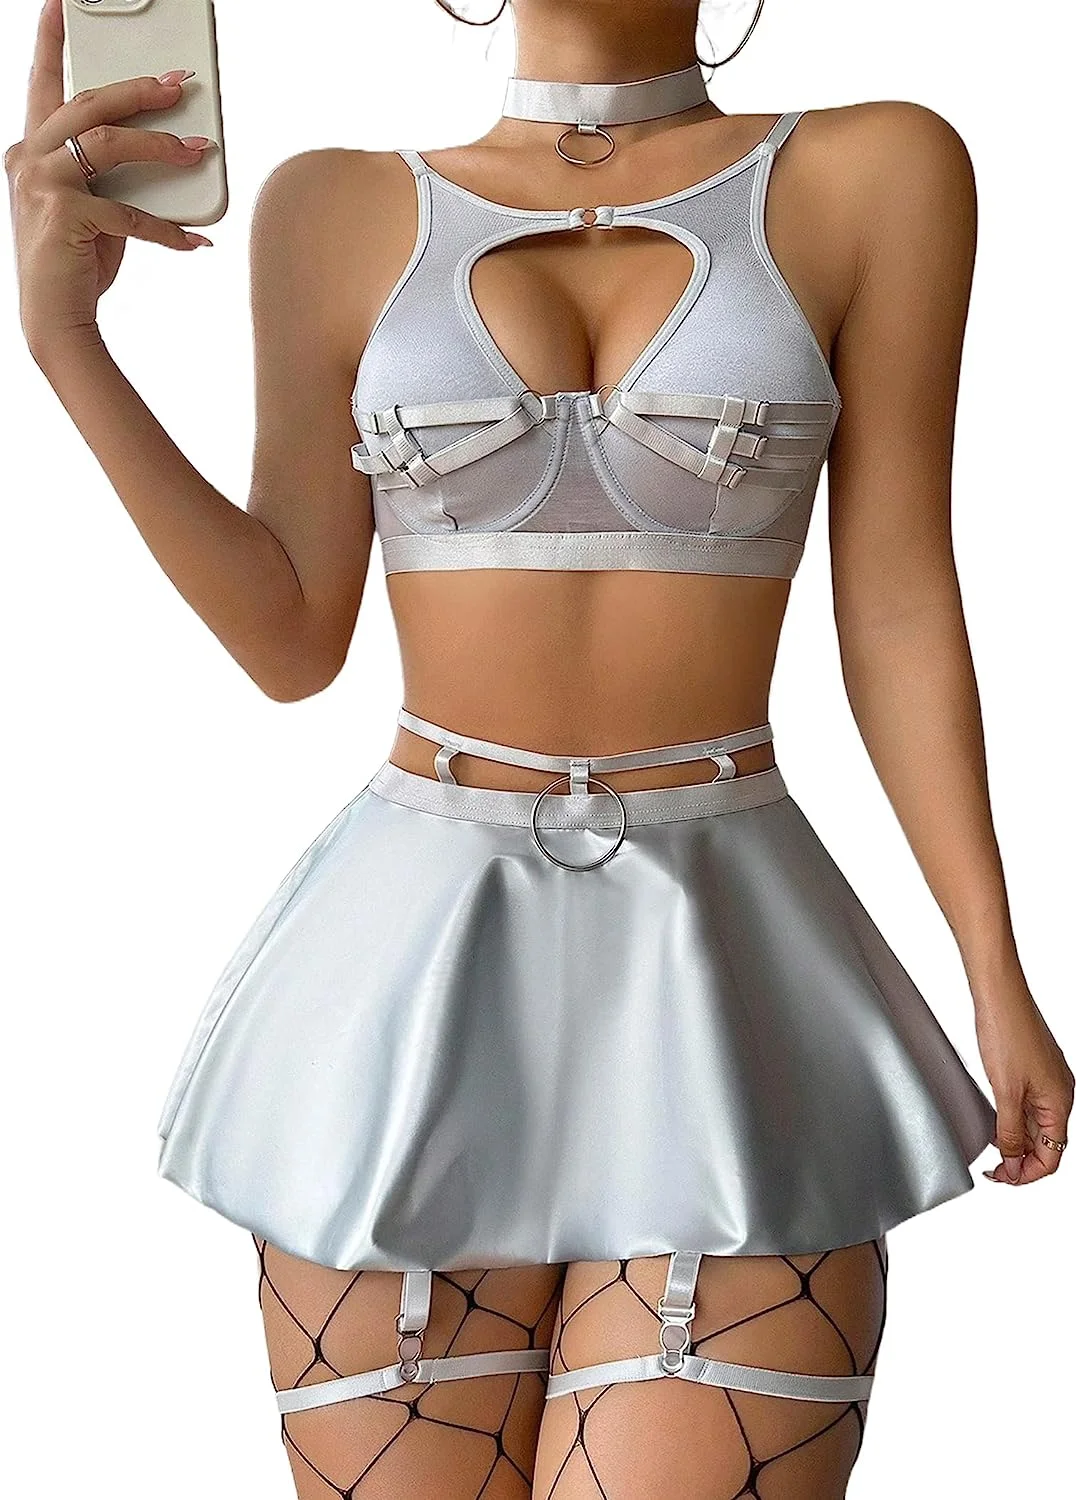 Lingerie for Women Chemise Babydoll Garter Skirt Lingerie Set